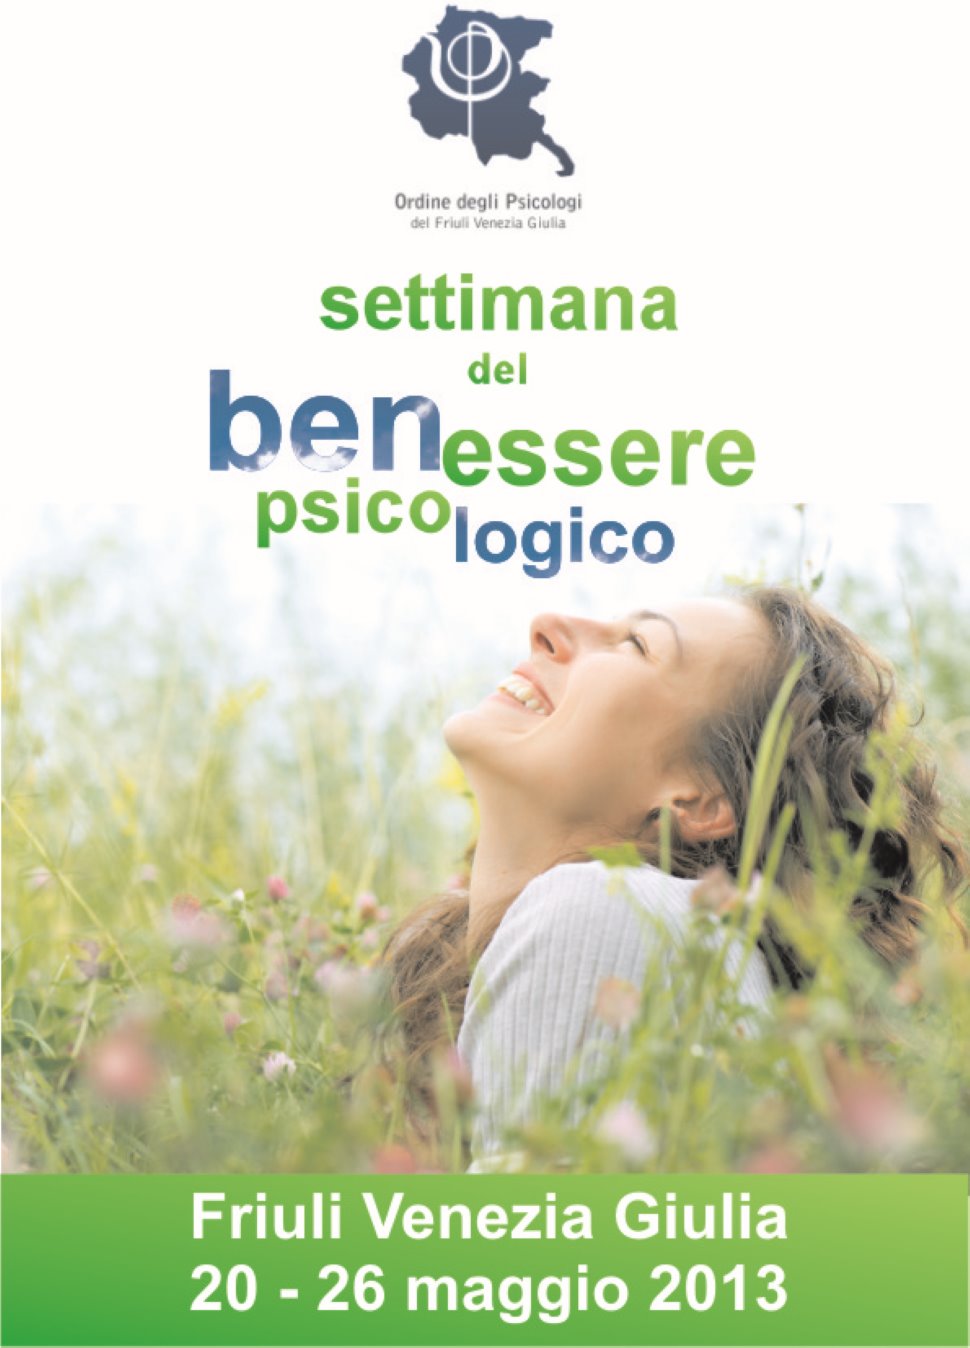 Settimana del Benessere Psicologico in Friuli Venezia Giulia